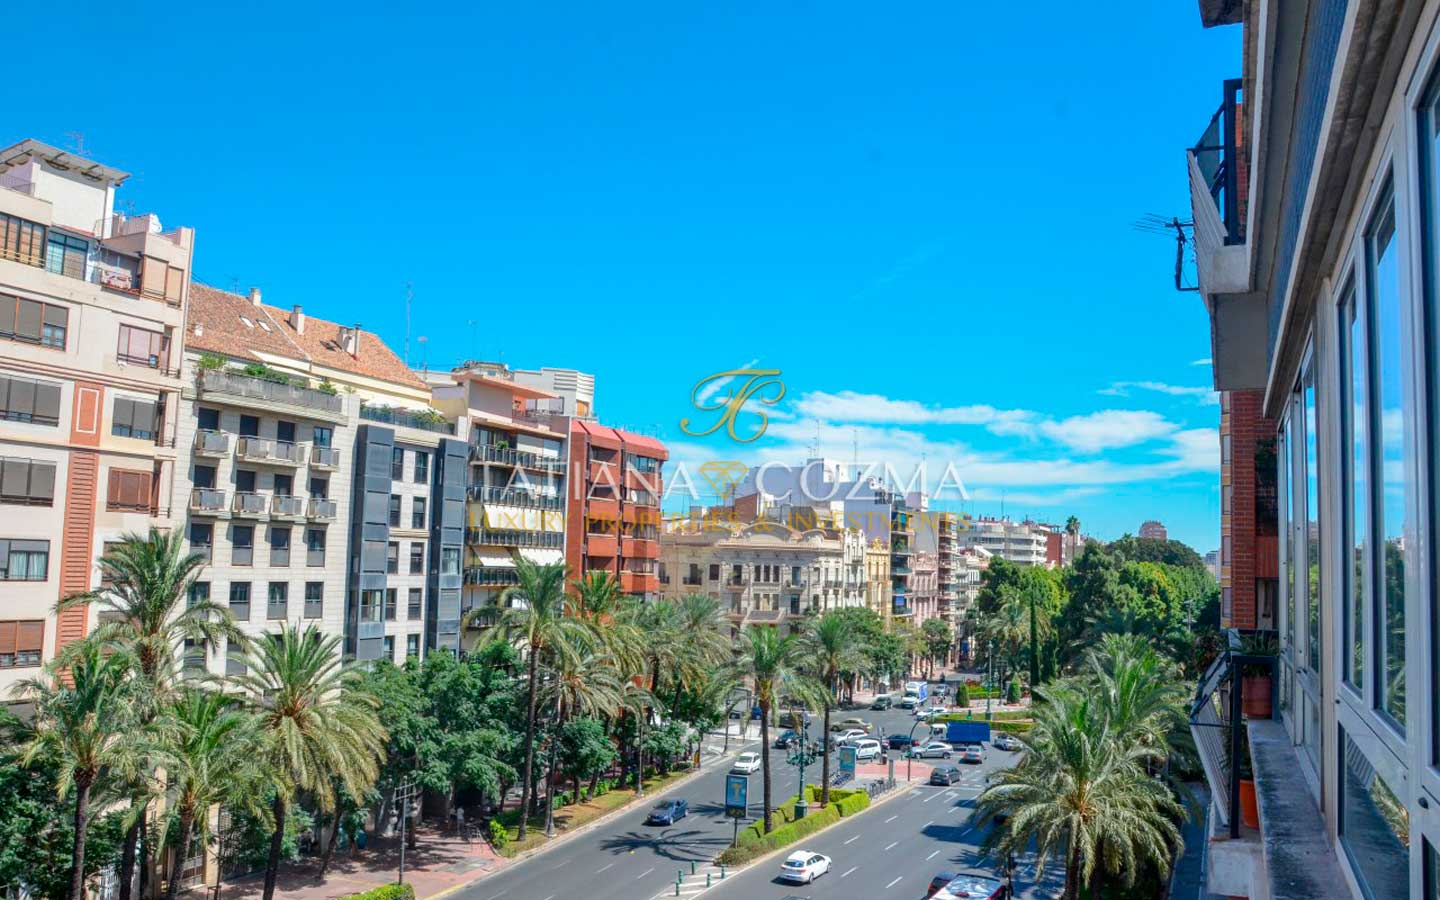 Excepcional vivienda en el corazón de Valencia